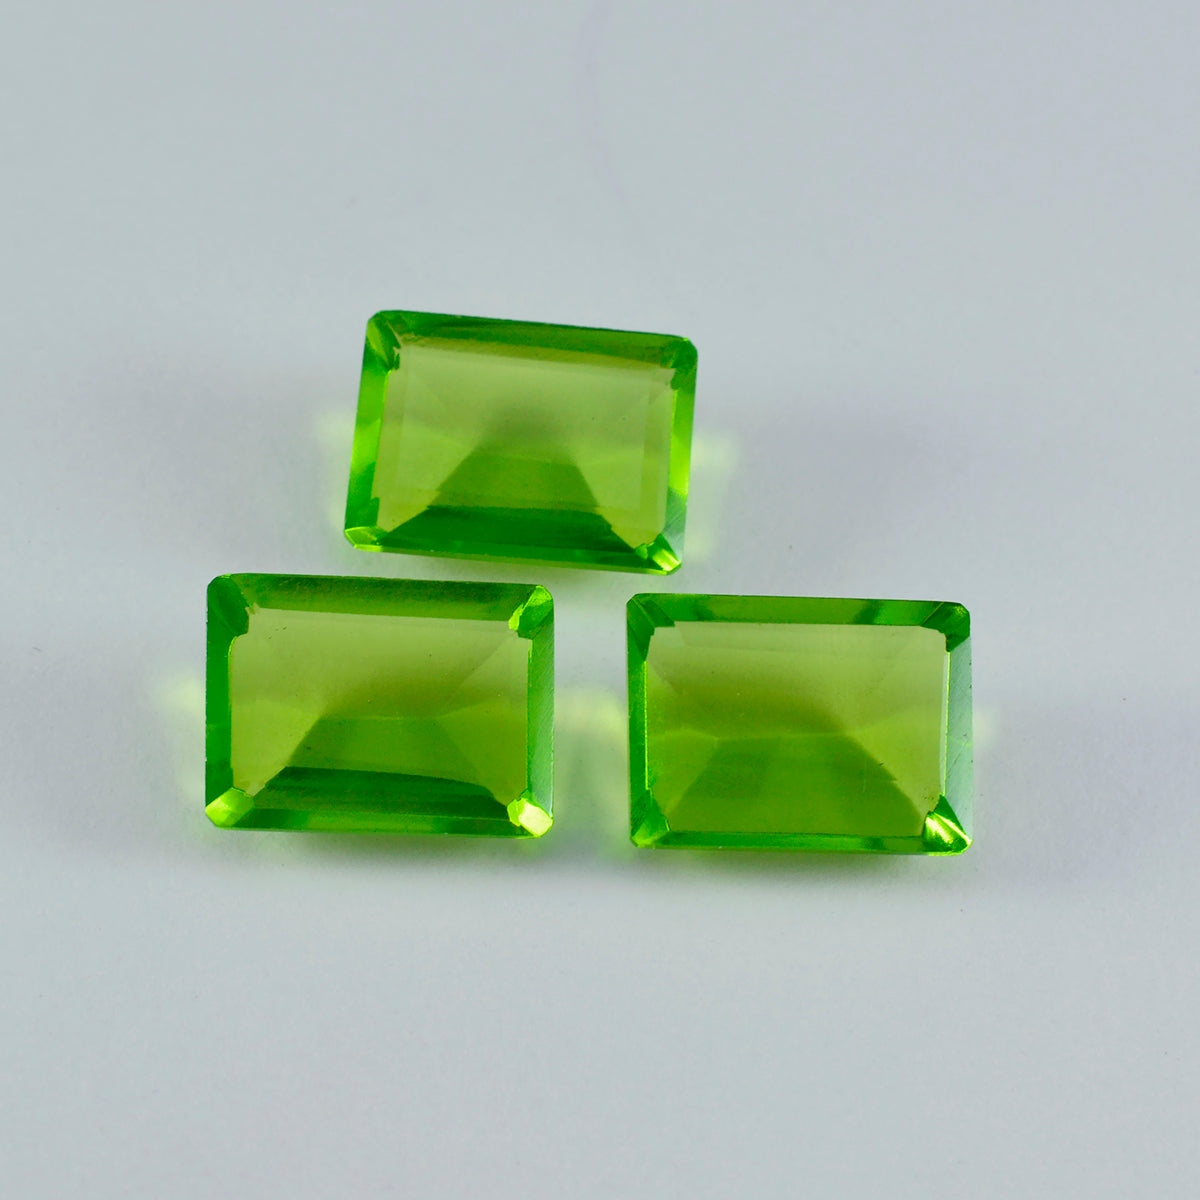 Riyogems 1pc péridot vert cz facettes 10x14mm forme octogonale beauté qualité pierre précieuse en vrac